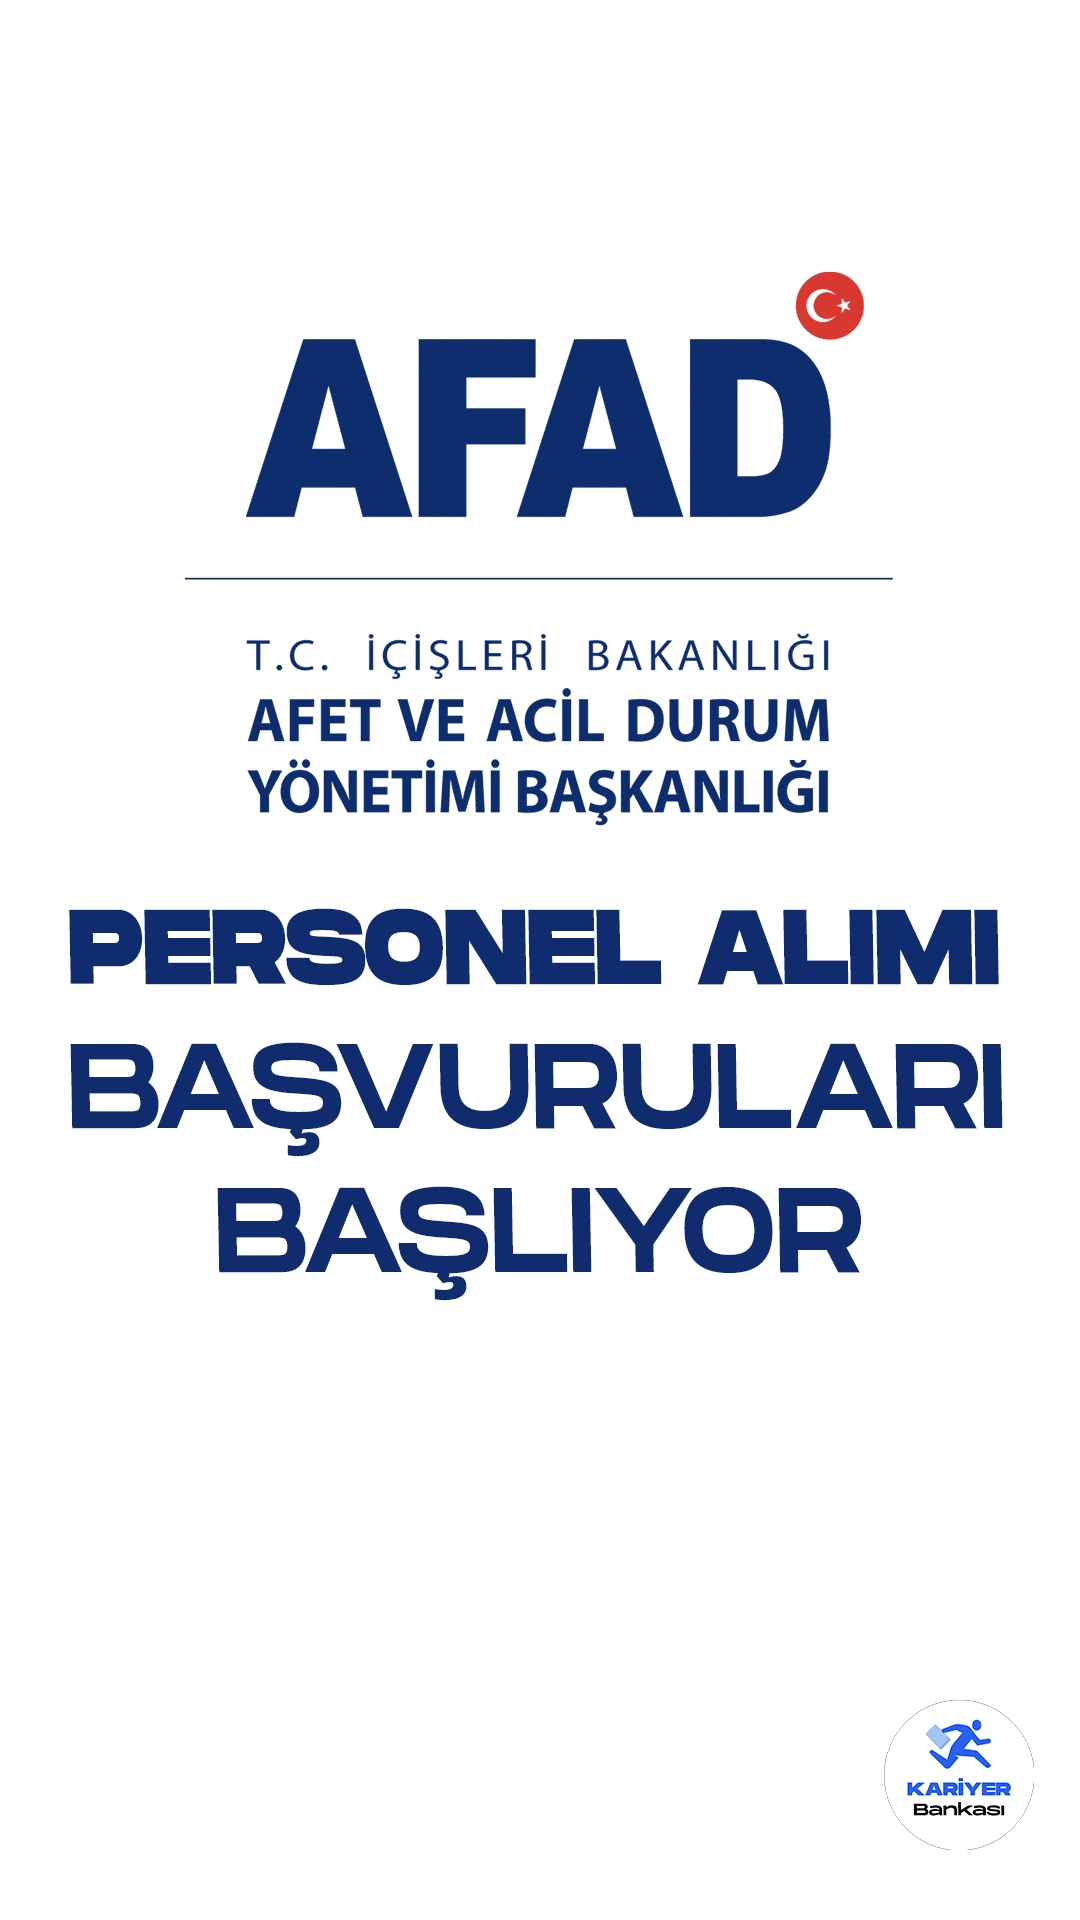 AFAD 215 Personel Alımı Başvuruları 9 Ekim'de Başlıyor. İçişleri Bakanlığı Afet ve Acil Durum Yönetimi Başkanlığı personel alımı için başvuru süreci başlıyor.Resmi Gazete’de yayımlanan duyuruya göre, AFAD’a sınavla 215 arama ve kurtarma teknisyeni alımı yapılacak. Başvuru yapacak adayların sınava katılma şartlarını sağlaması gerekmektedir.